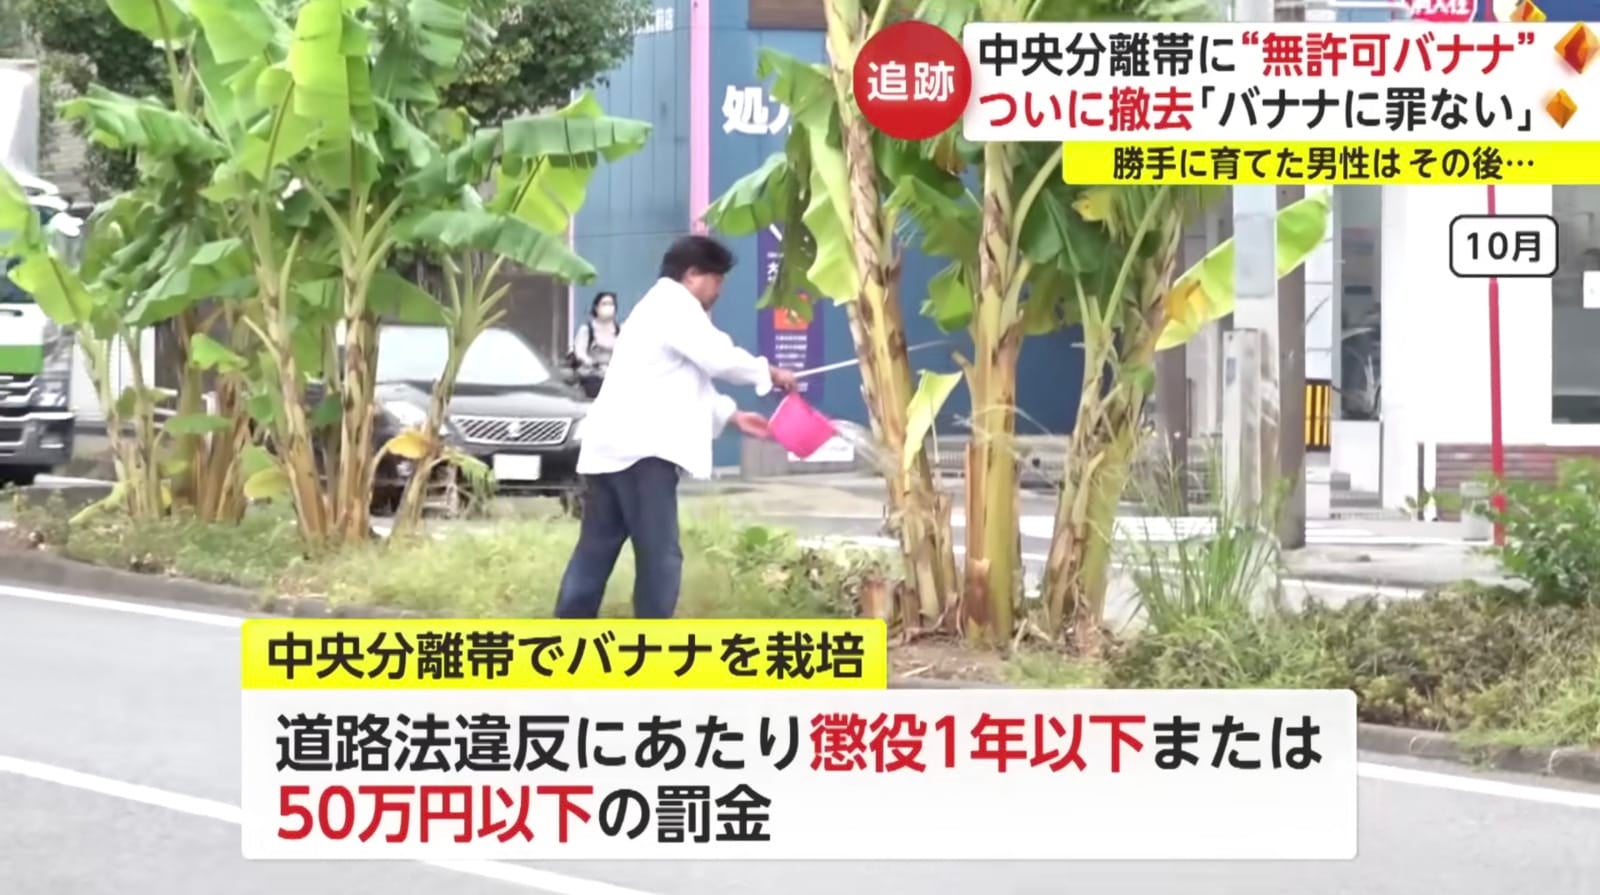 ชายชาวญี่ปุ่นแอบปลูกกล้วยบนเกาะกลางถนนนานกว่า 2 ปี ก่อนถูกสั่งให้ถอนออกเพราะตำรวจเพิ่งรู้